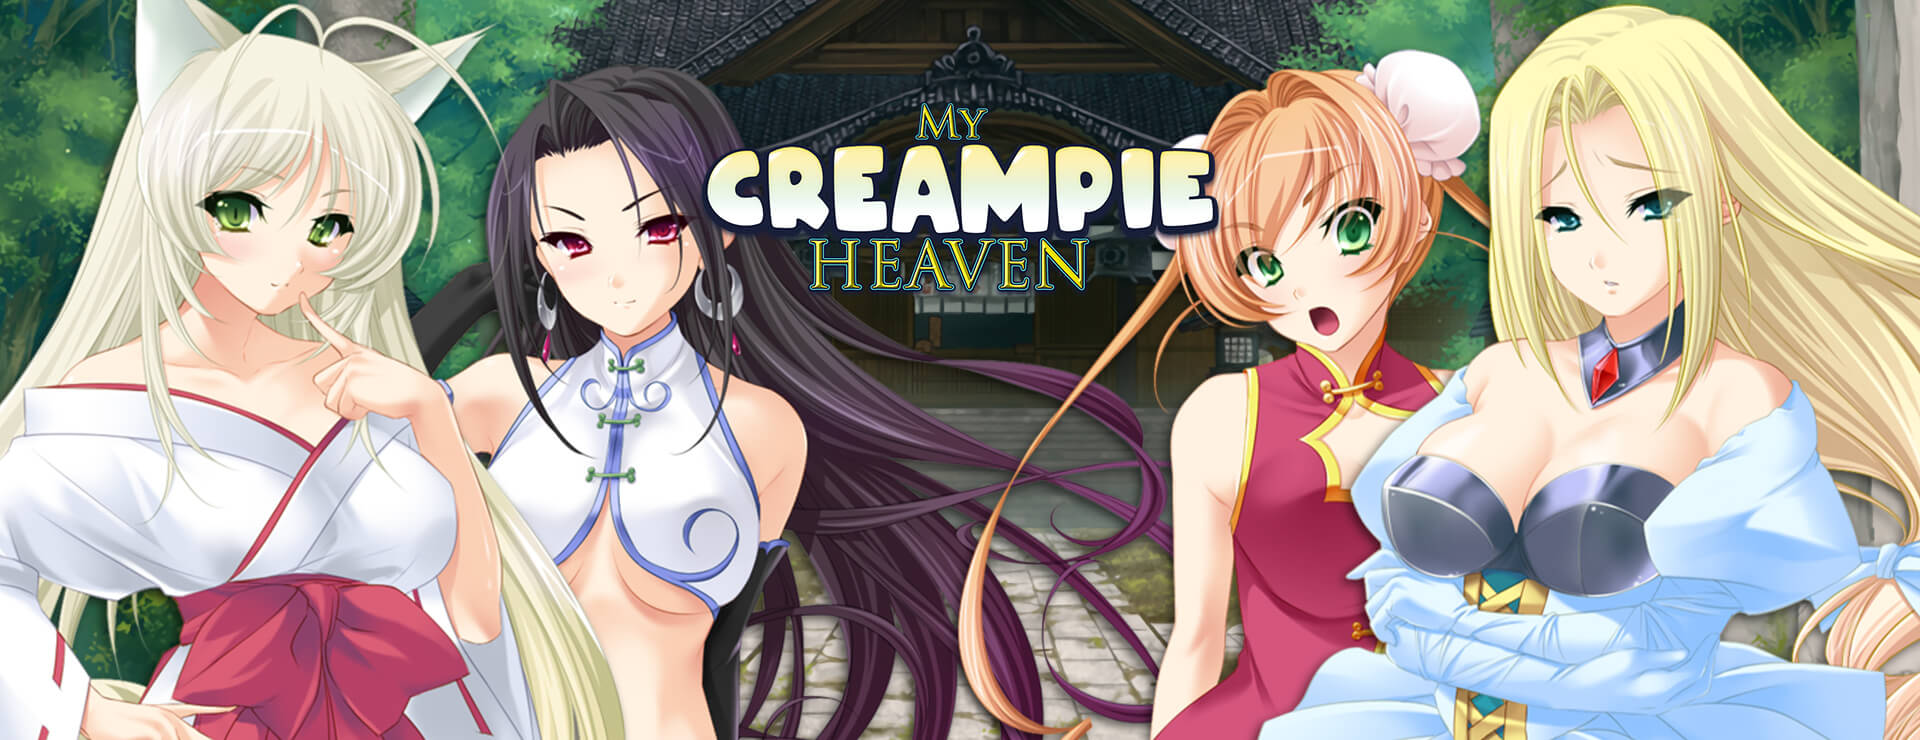 My Creampie Heaven - ビジュアルノベル ゲーム